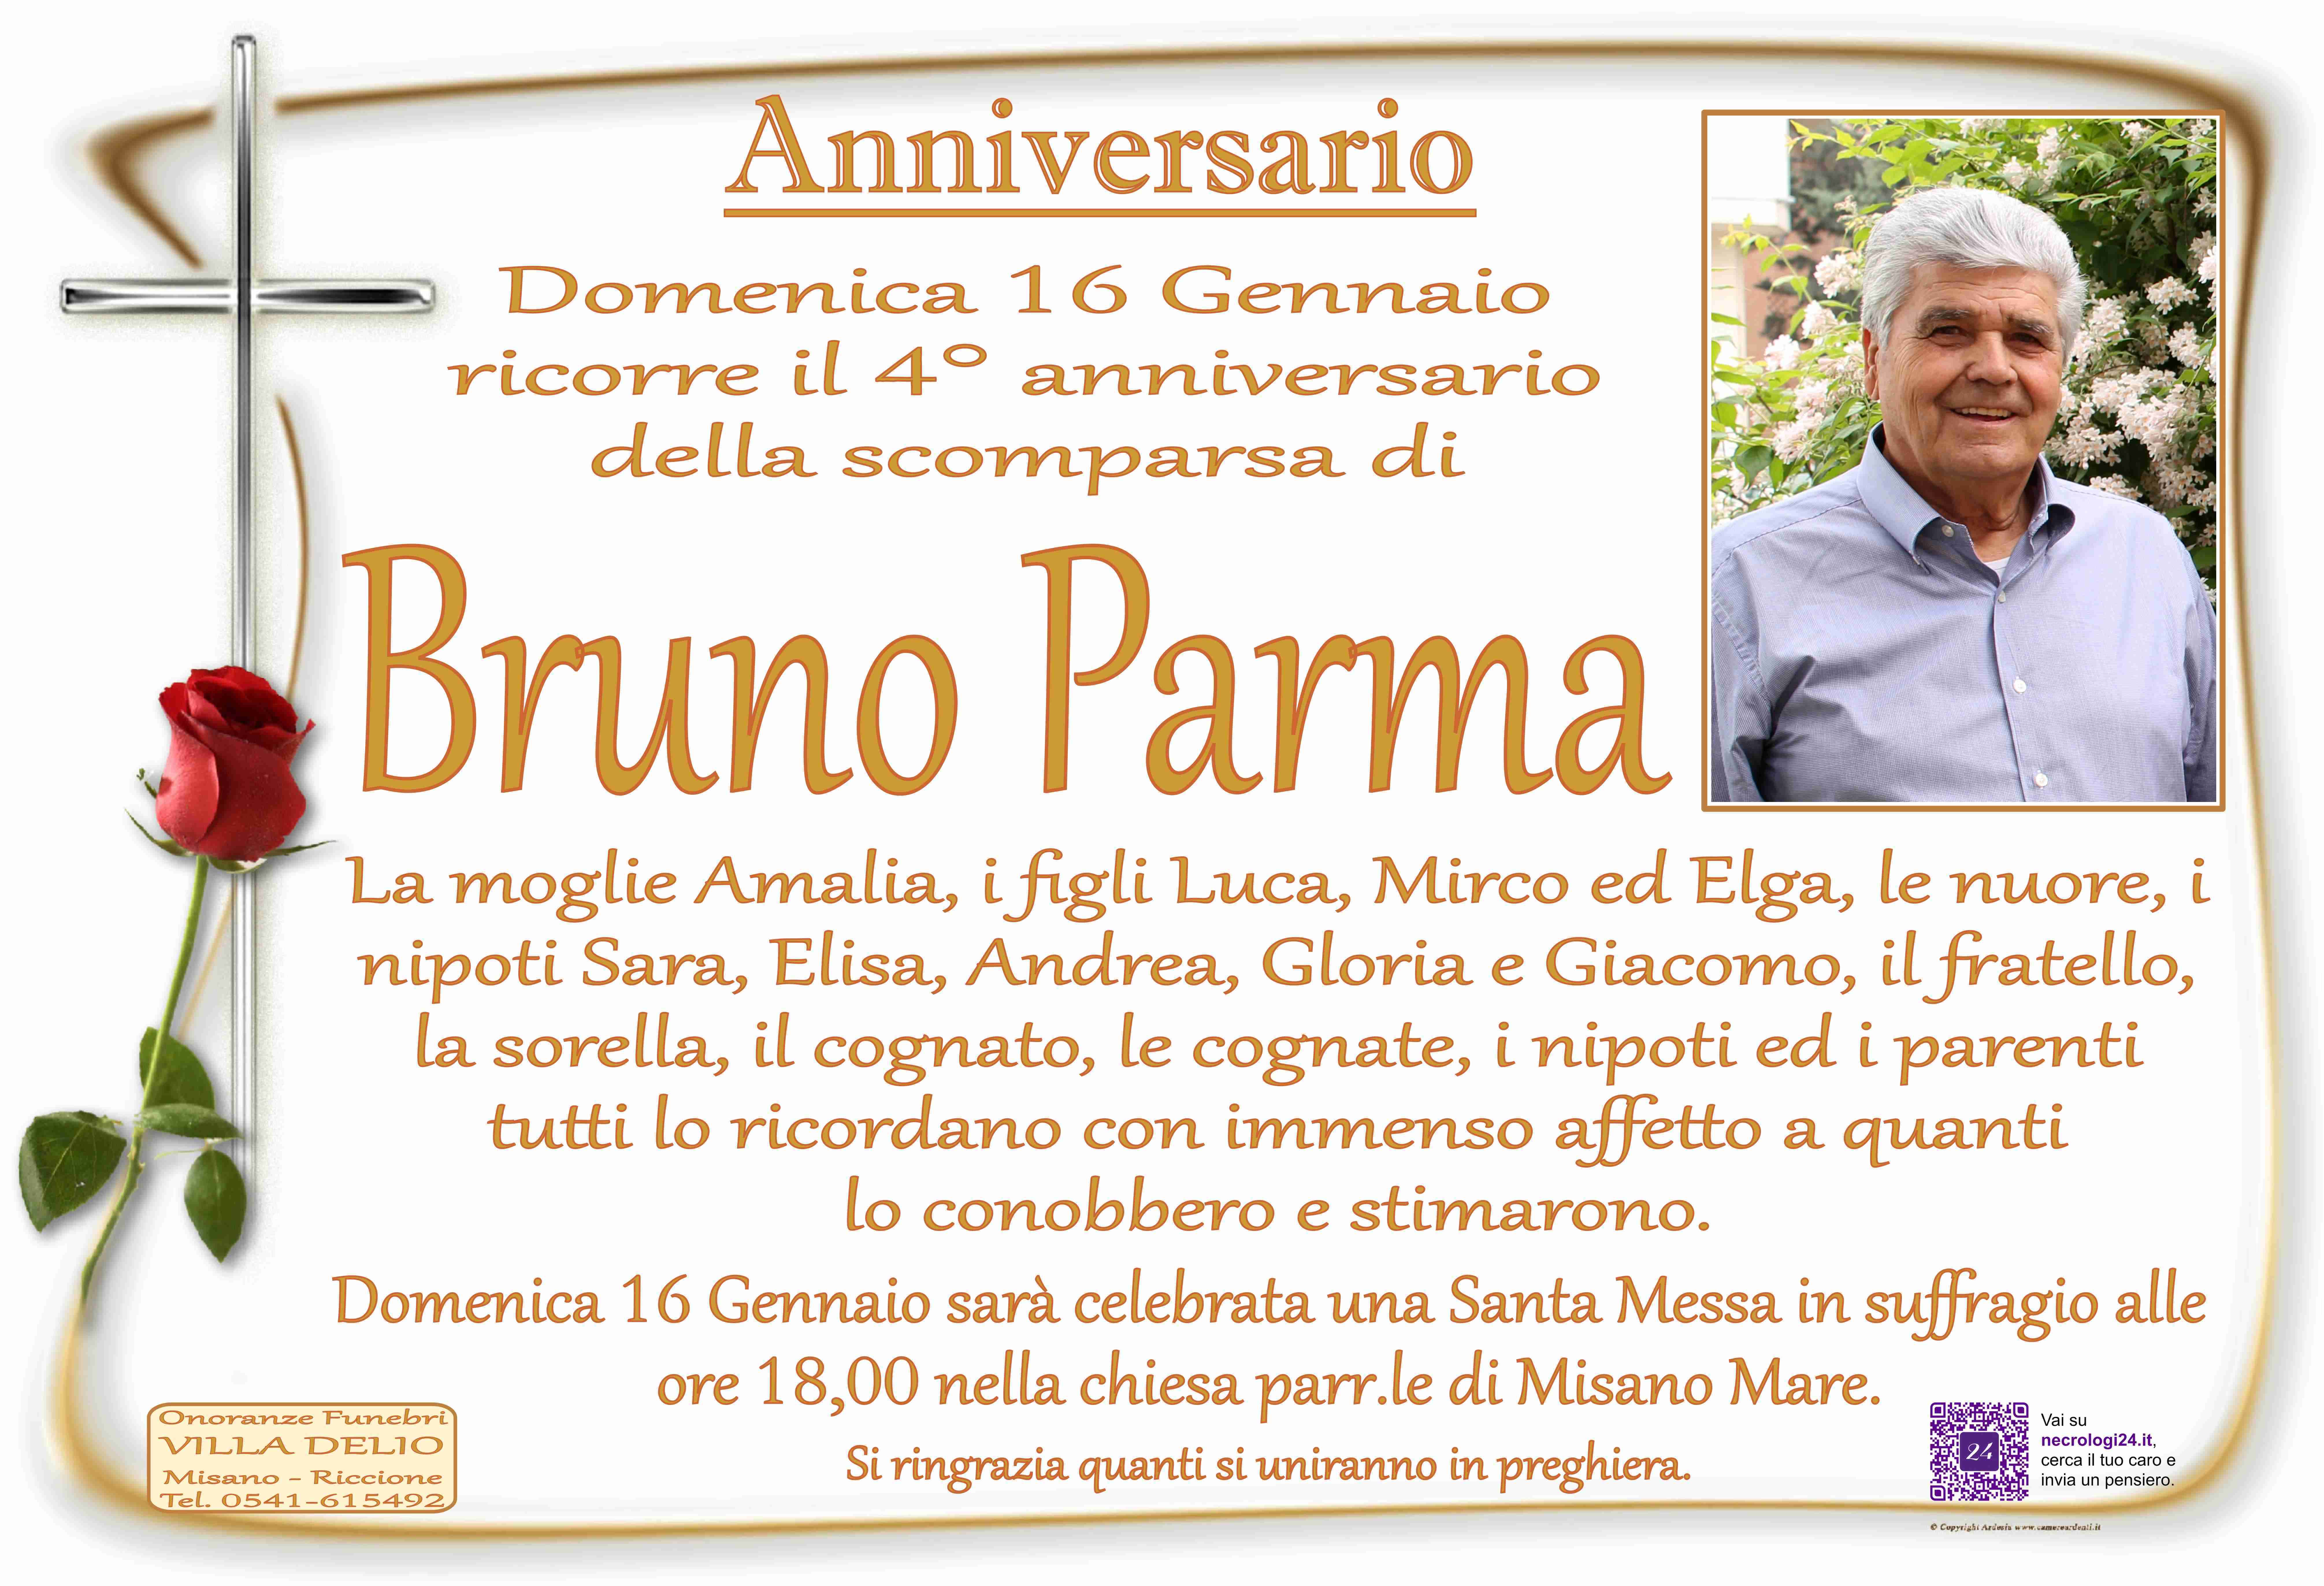 Bruno Parma